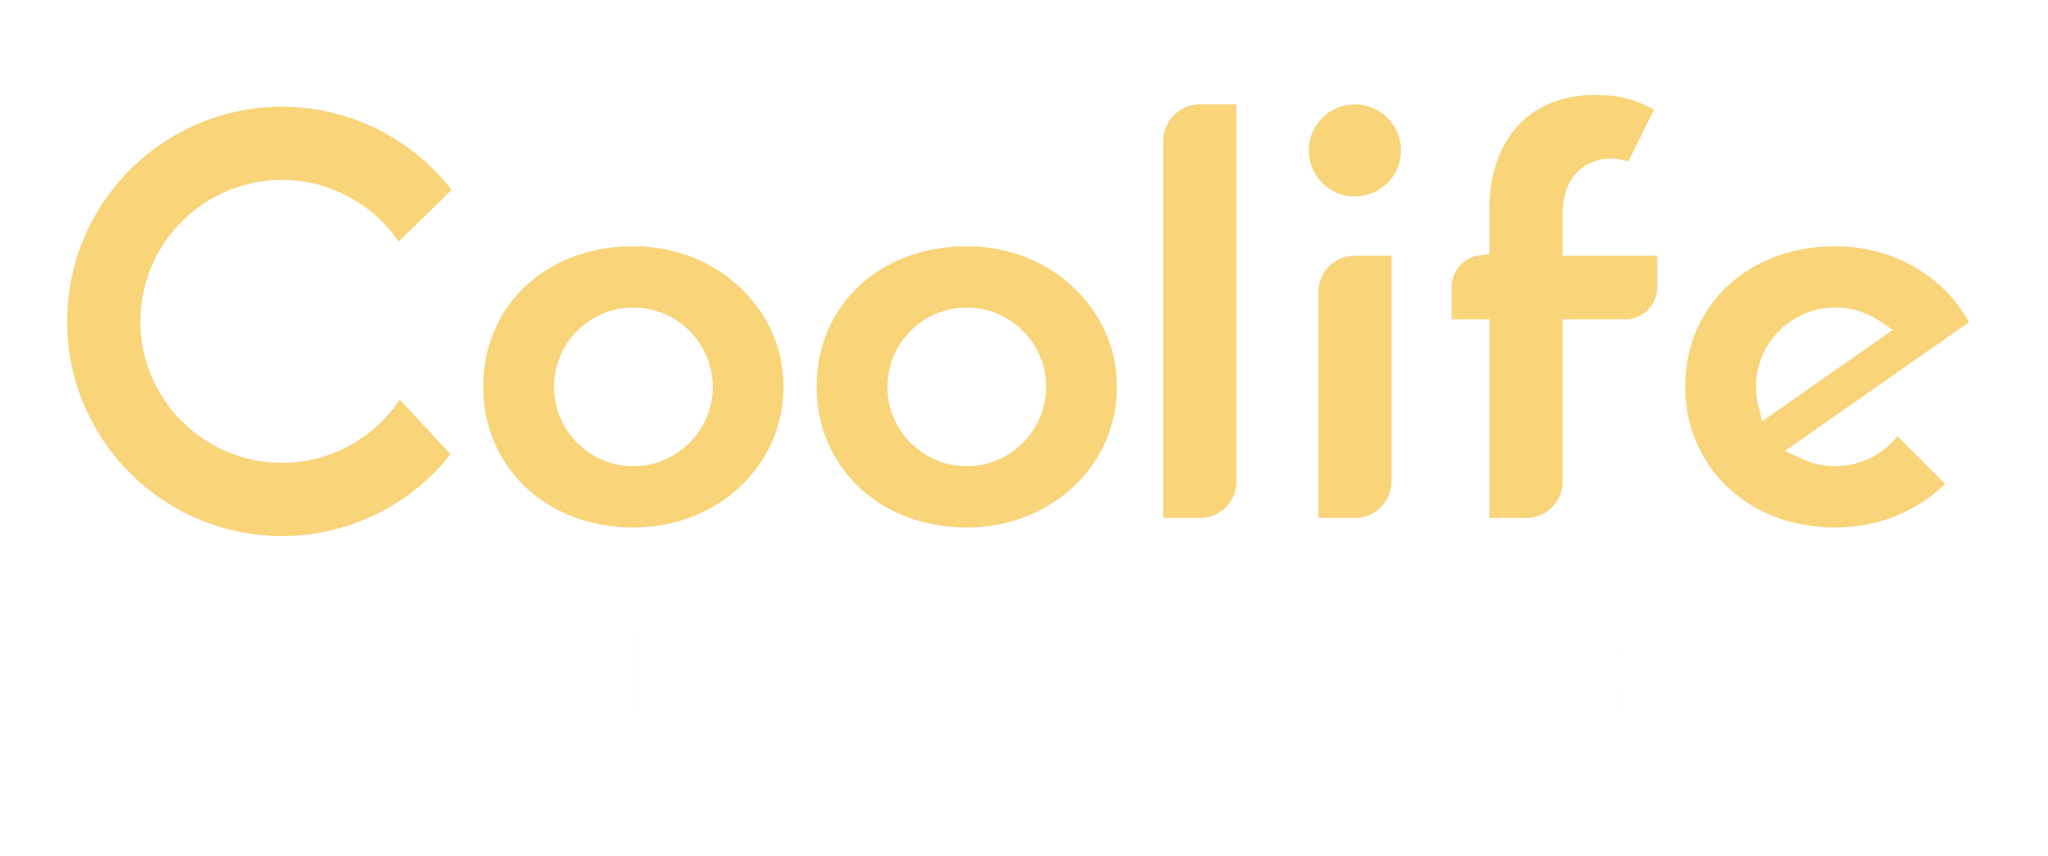 Coolife-shop